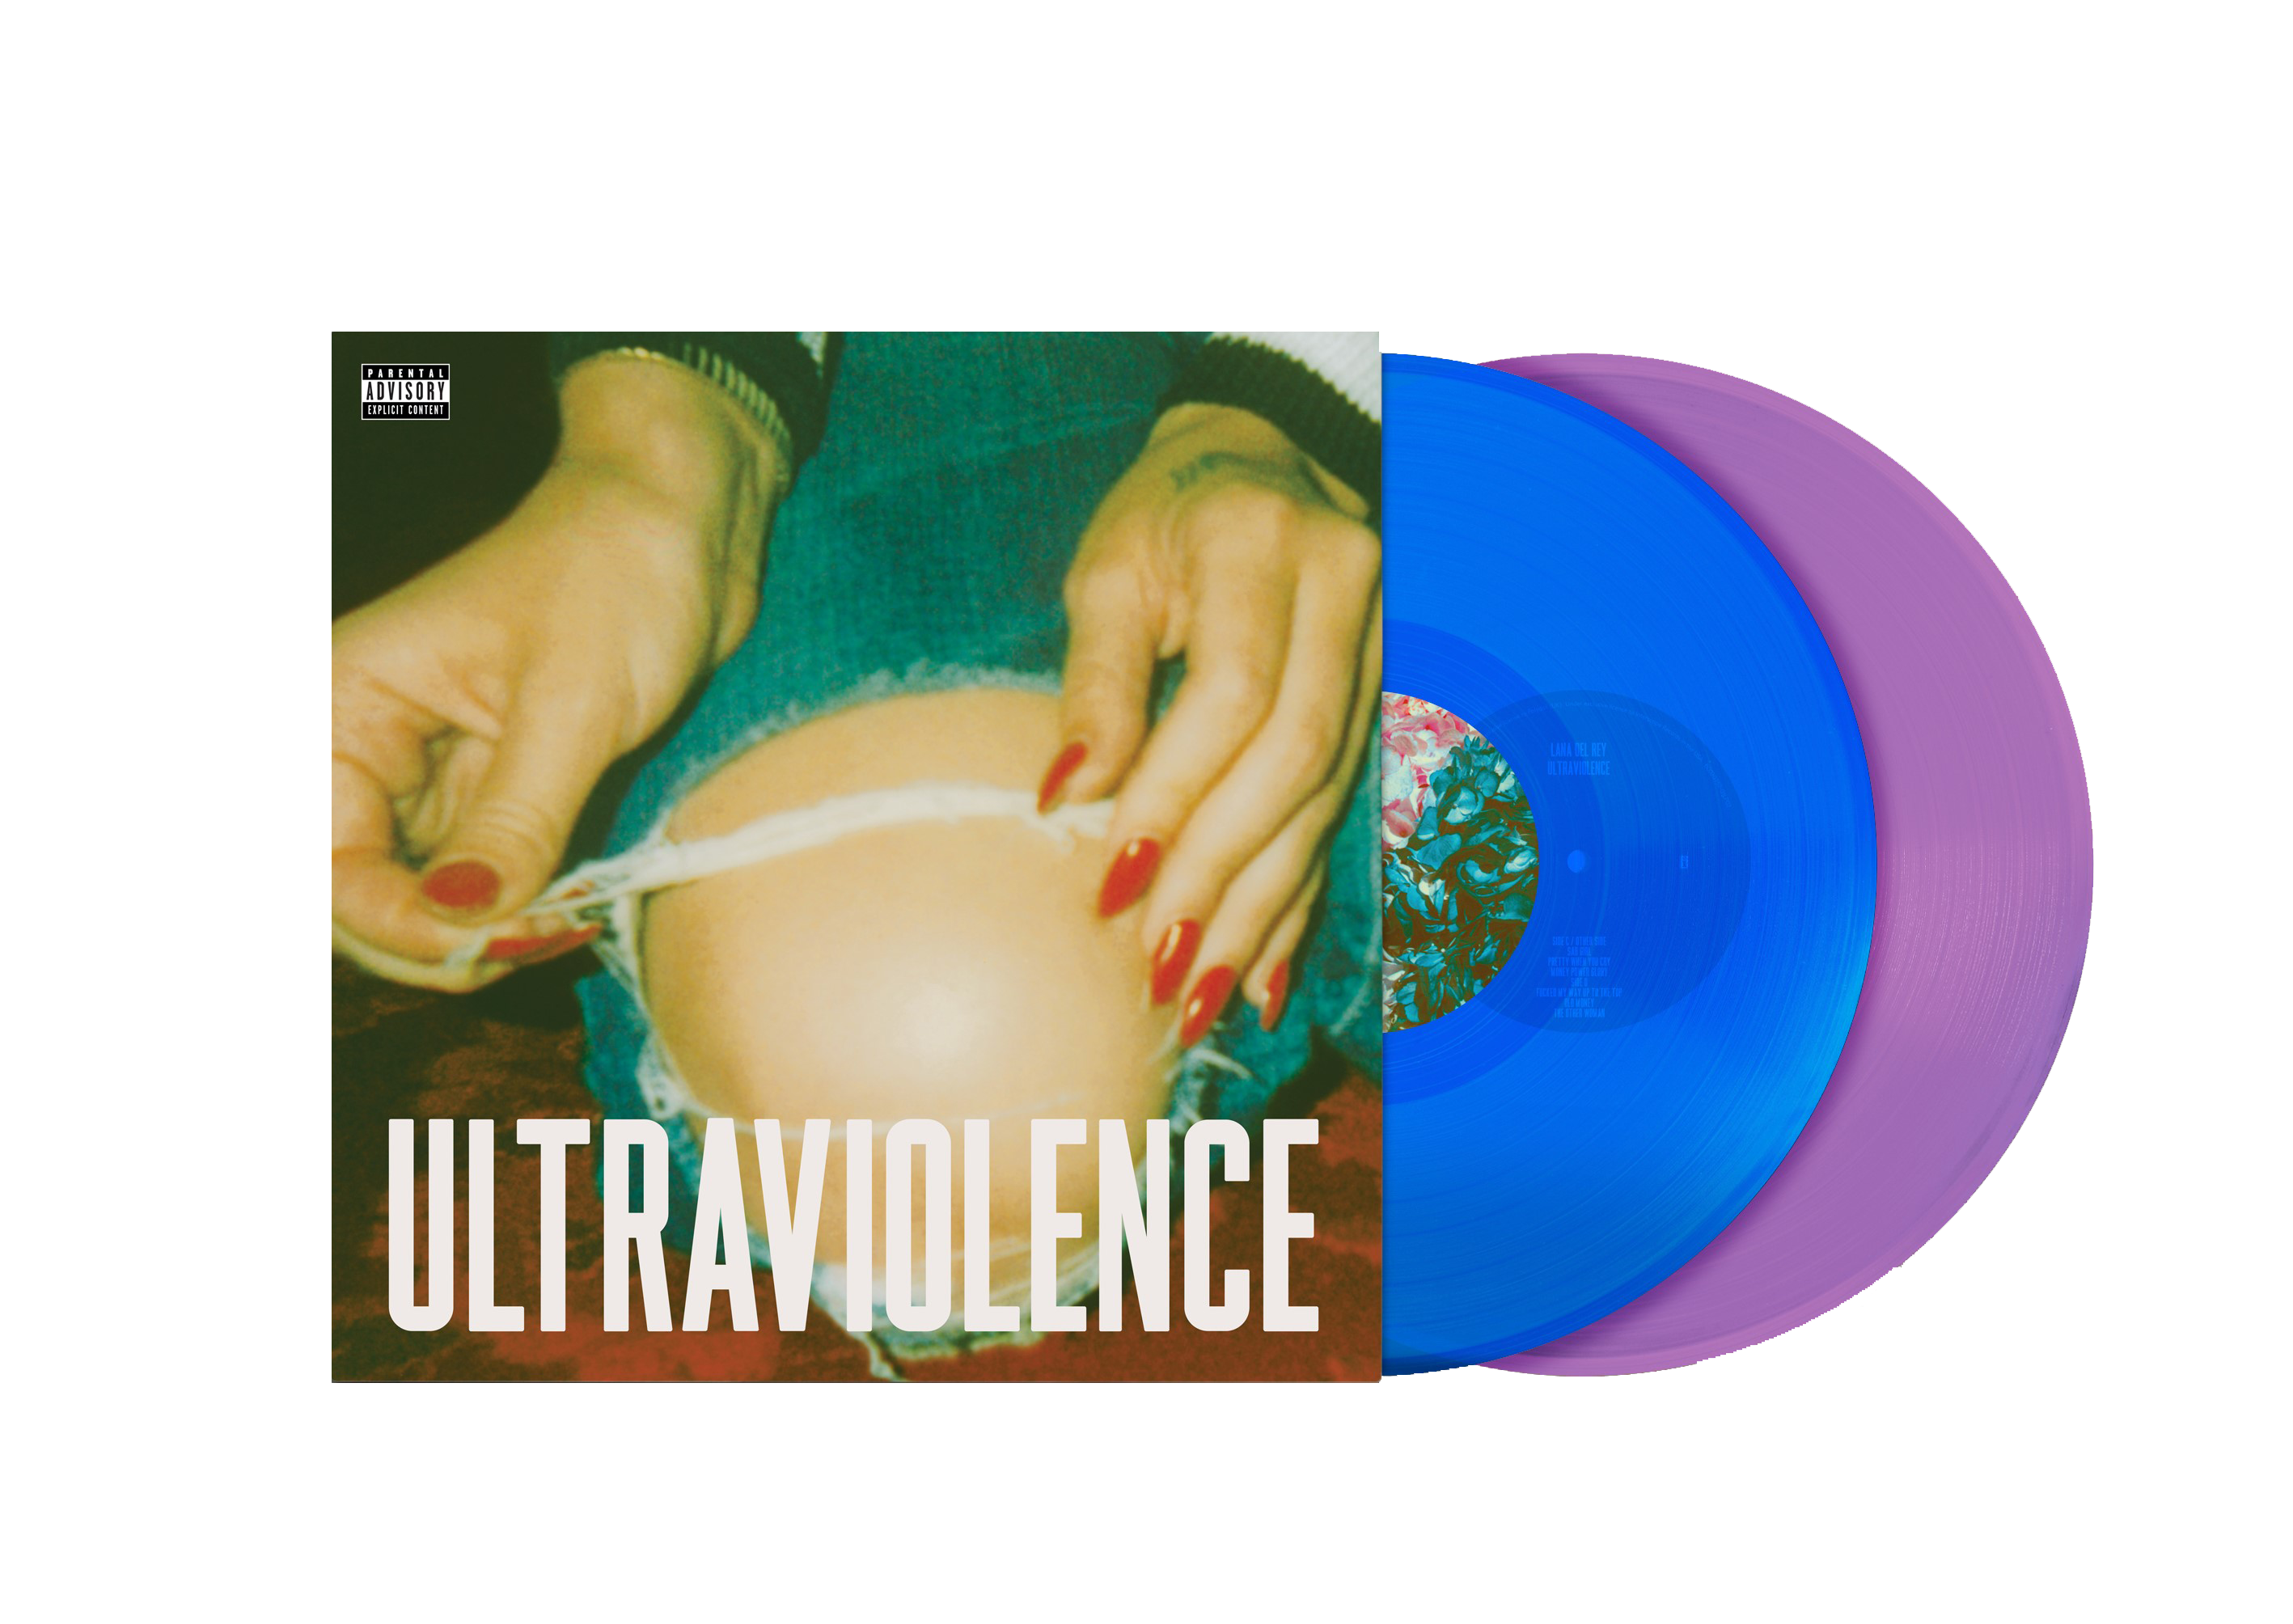 Lana Del Rey - ULTRAVIOLENCE - Vinilo (Edición Exclusiva Color Azul  Traslúcido y Violeta Opaco. Alt Cover 2LP) –